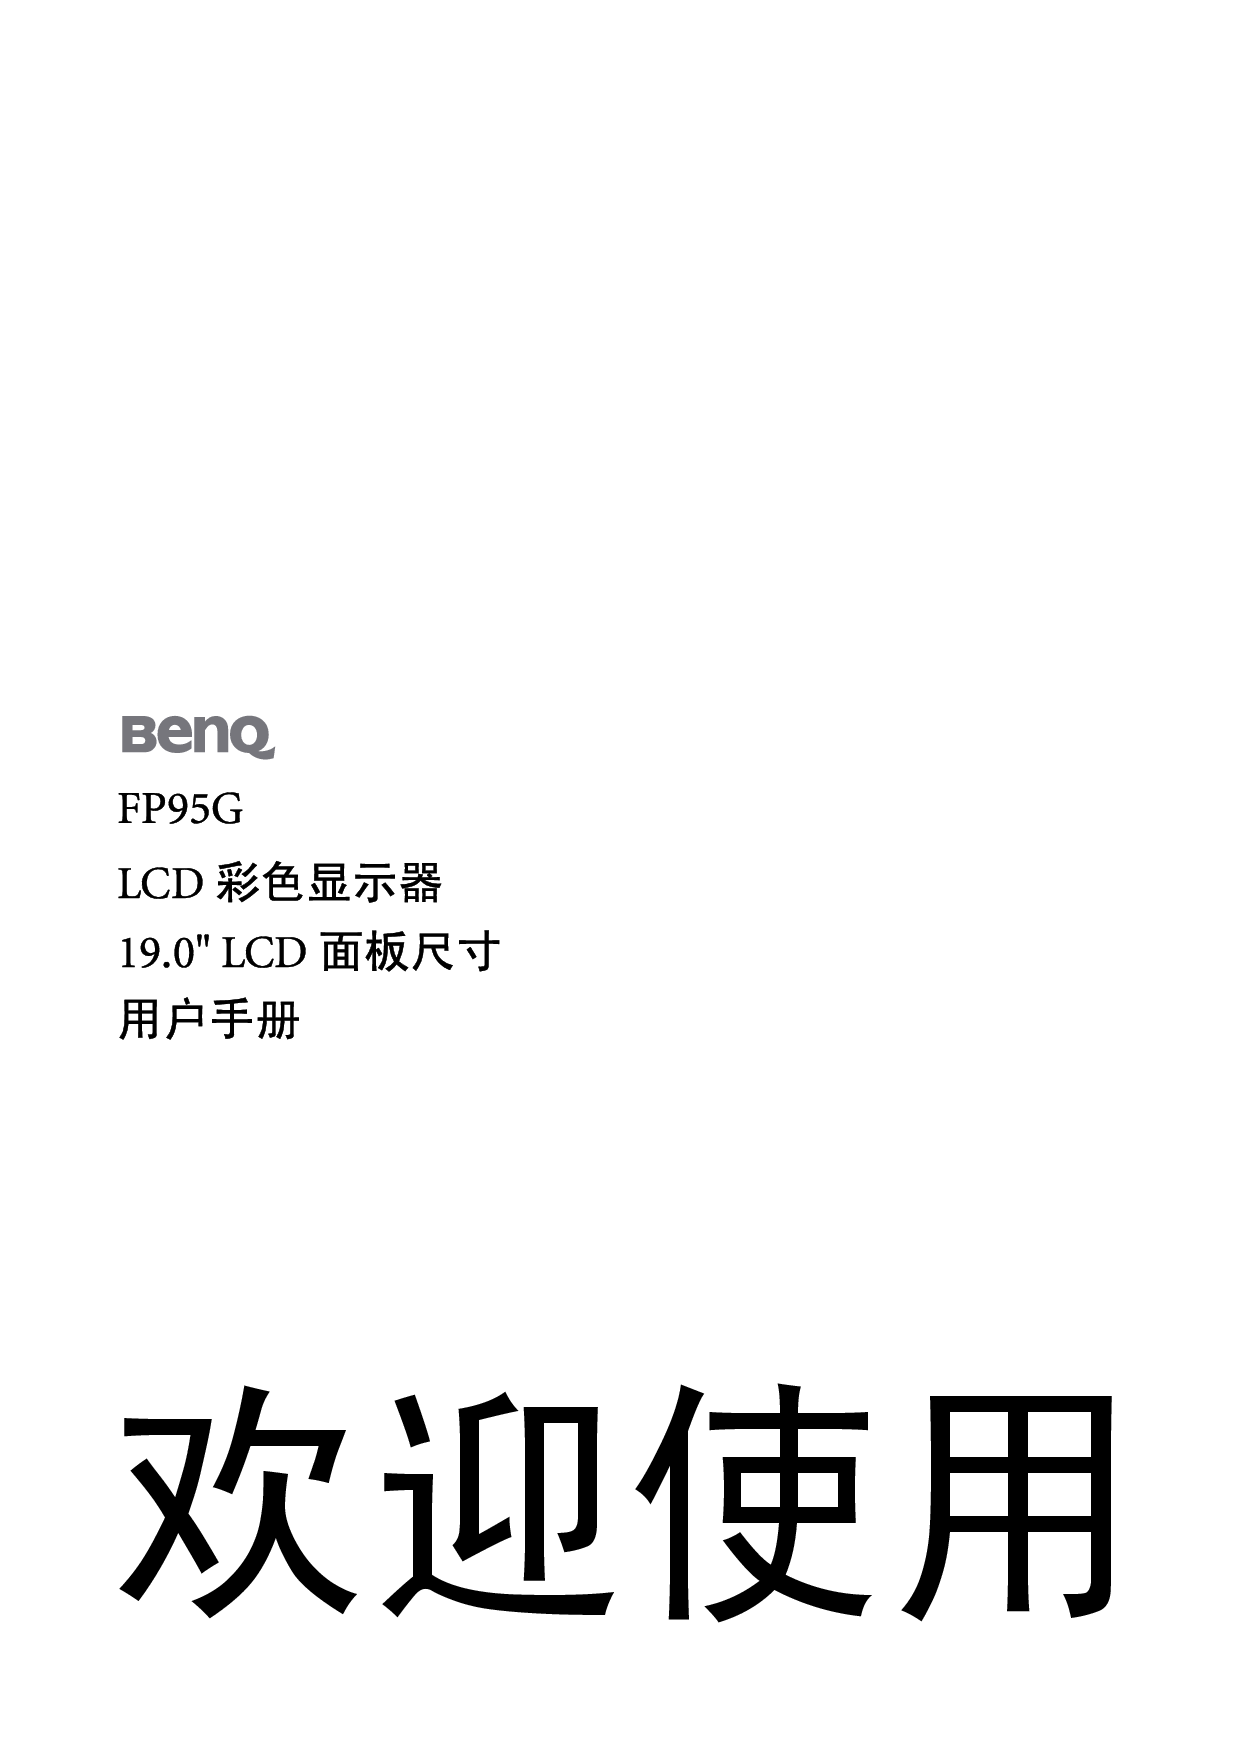 明基 Benq FP95G 使用手册 封面